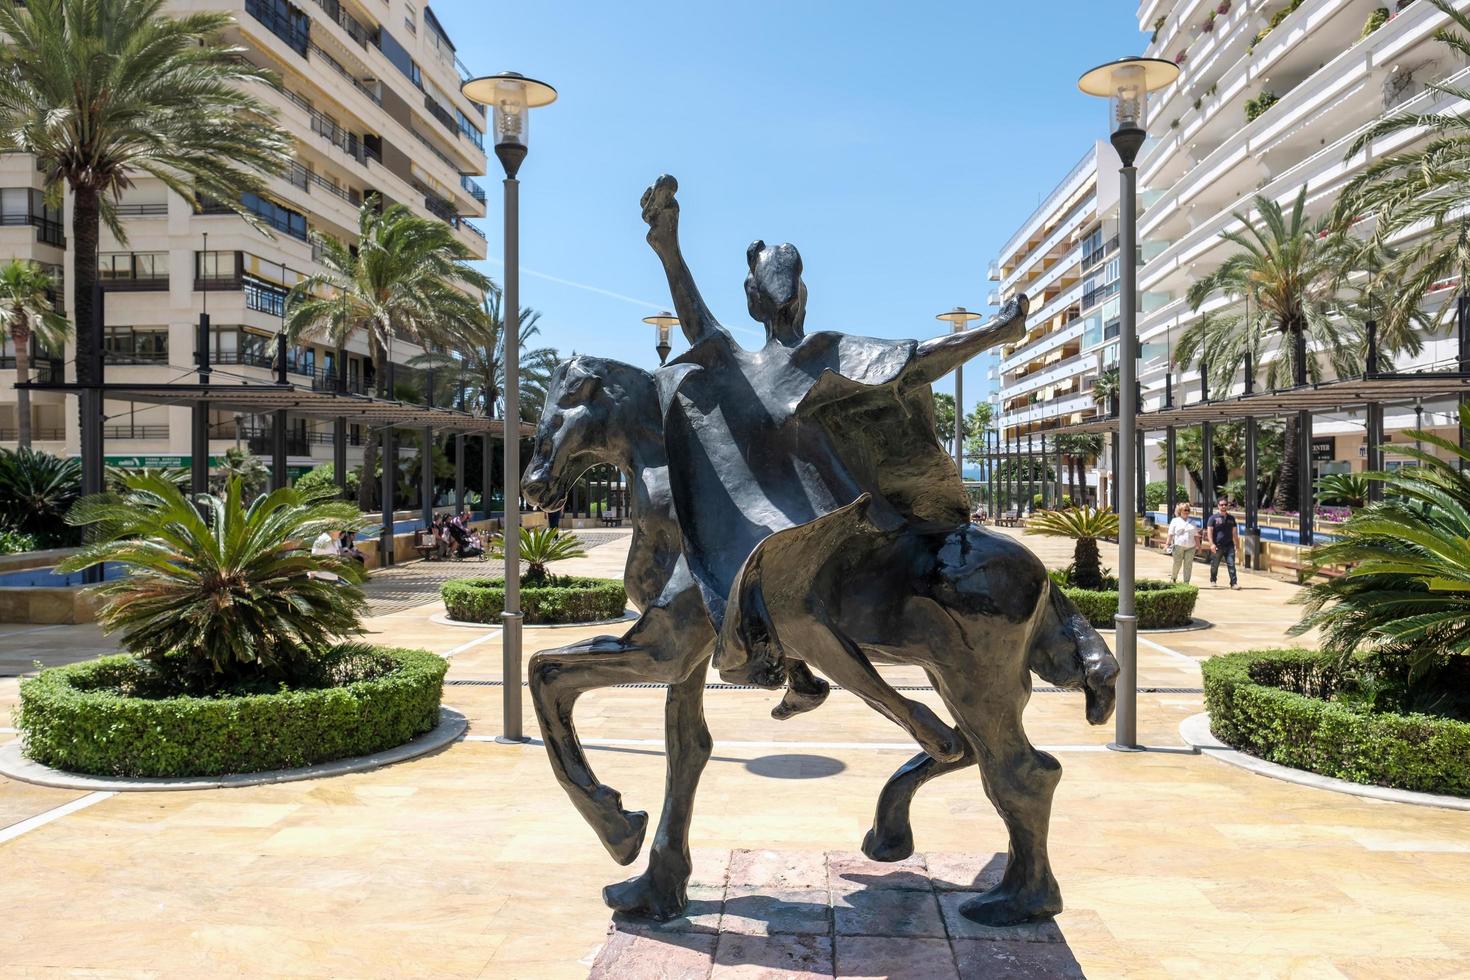 marbella, spanien, 2016. trajano reitet auf einem pferd statue von salvador dali foto